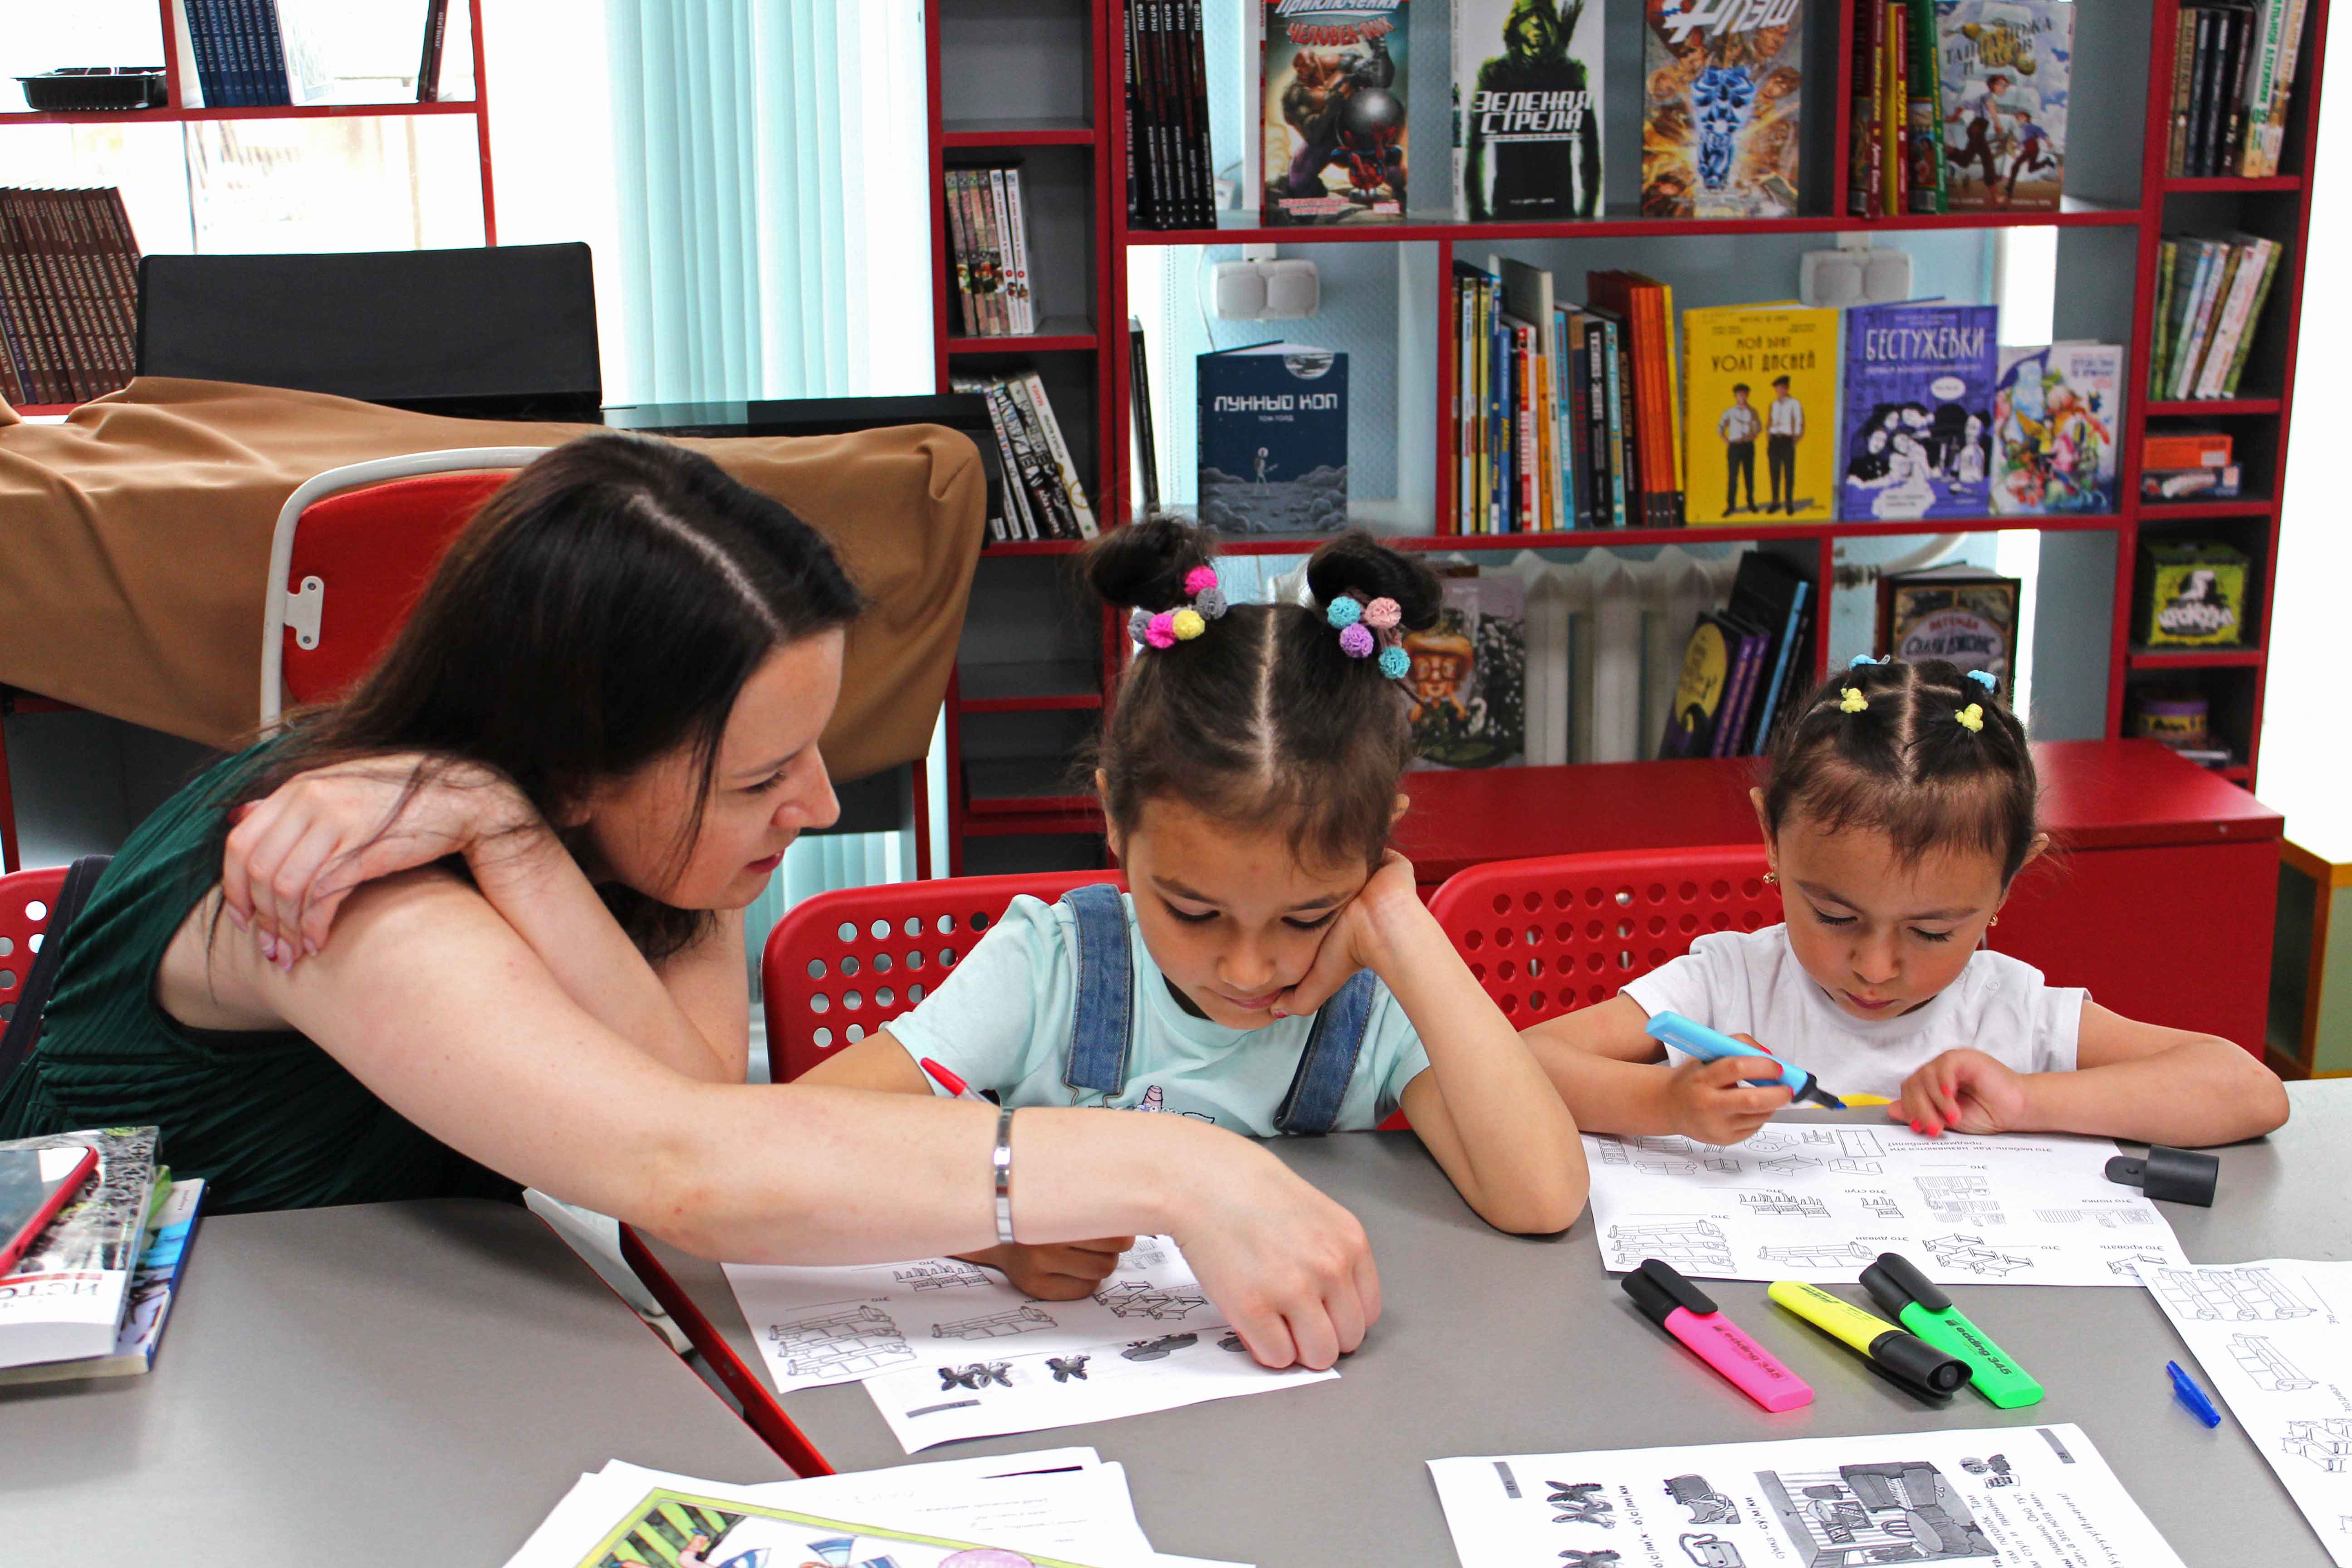 В Центральной районной детской библиотеке (Большой пр. П.С., д.65) проходят занятия, на которых волонтеры этой организации и библиотекари общаются с детьми, играют, смотрят обучающие видеоролики, читают и разбирают правила русского языка.